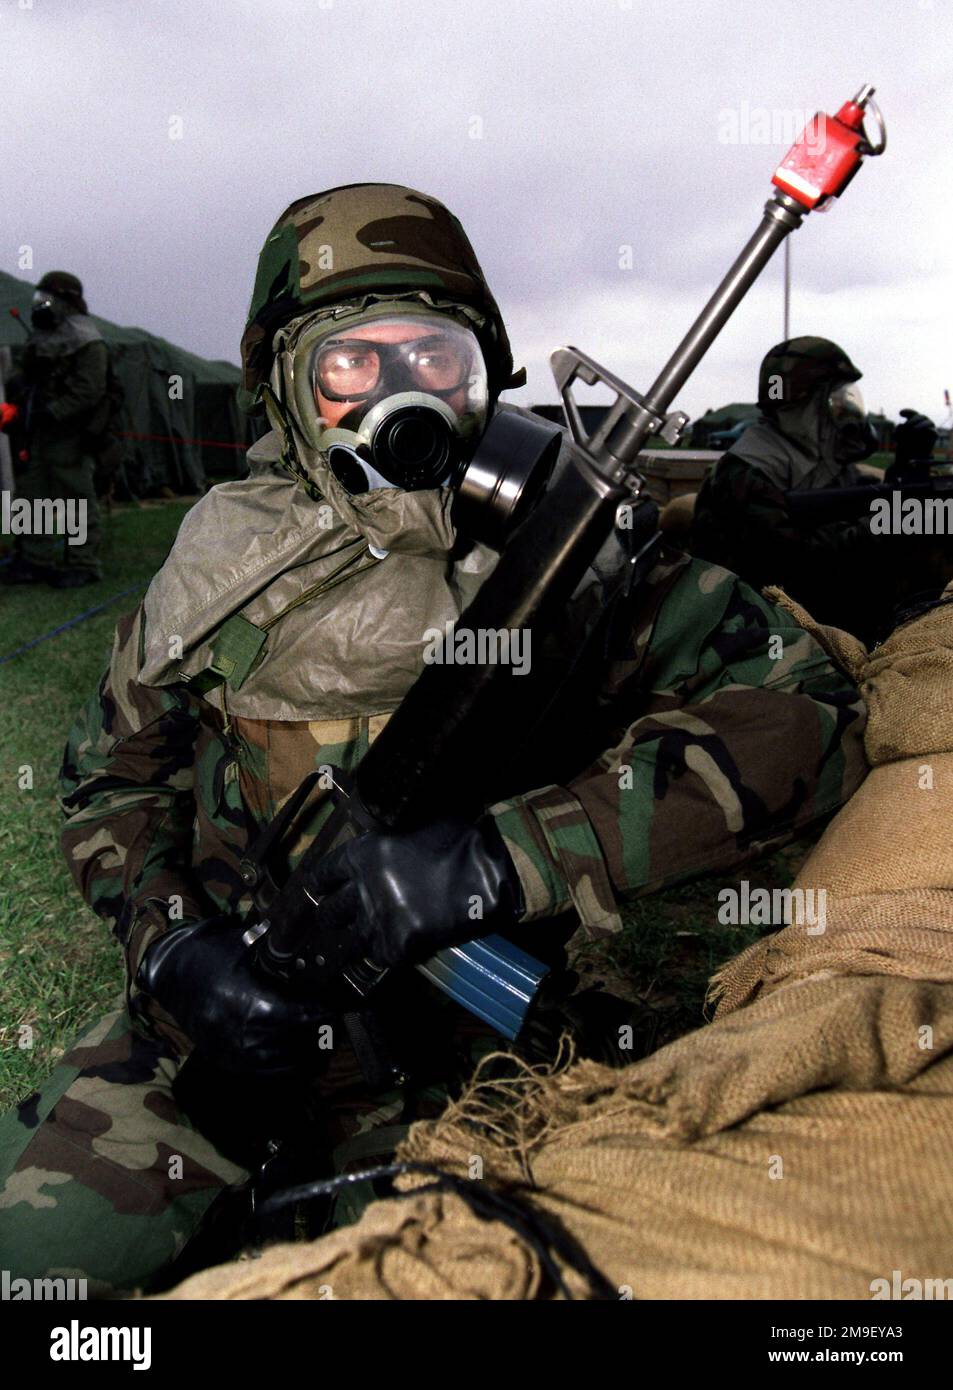 Scatto medio vicino. Un memeber della squadra di dover mantiene una posizione di combattimento difensiva durante l'esercitazione base di Battle AX dover AFB, Delaware il 28 marzo 2000. Base: Dover Air Force base Stato: Delaware (DE) Paese: Stati Uniti d'America (USA) Foto Stock